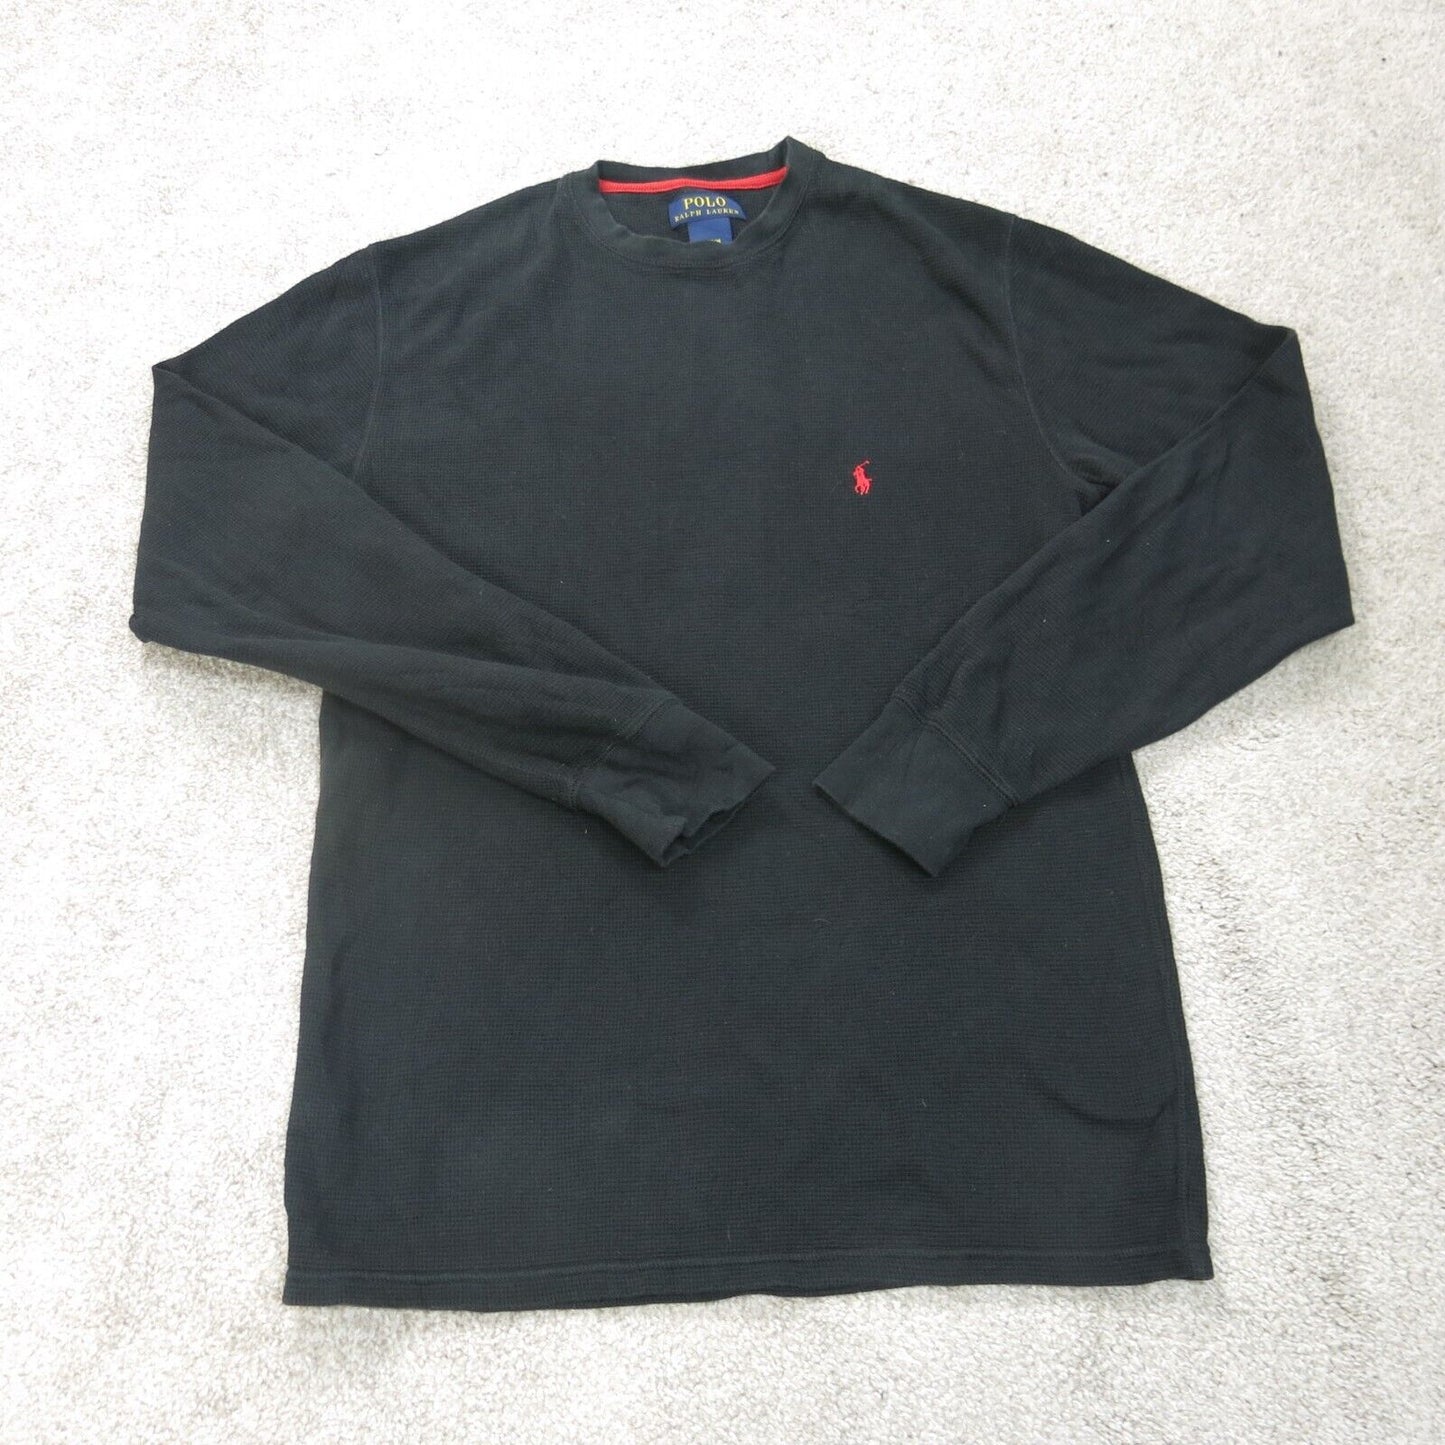 Polo Ralph Lauren Shirt Mens Medium Black Crew Neck Long Sleeve Lightweight